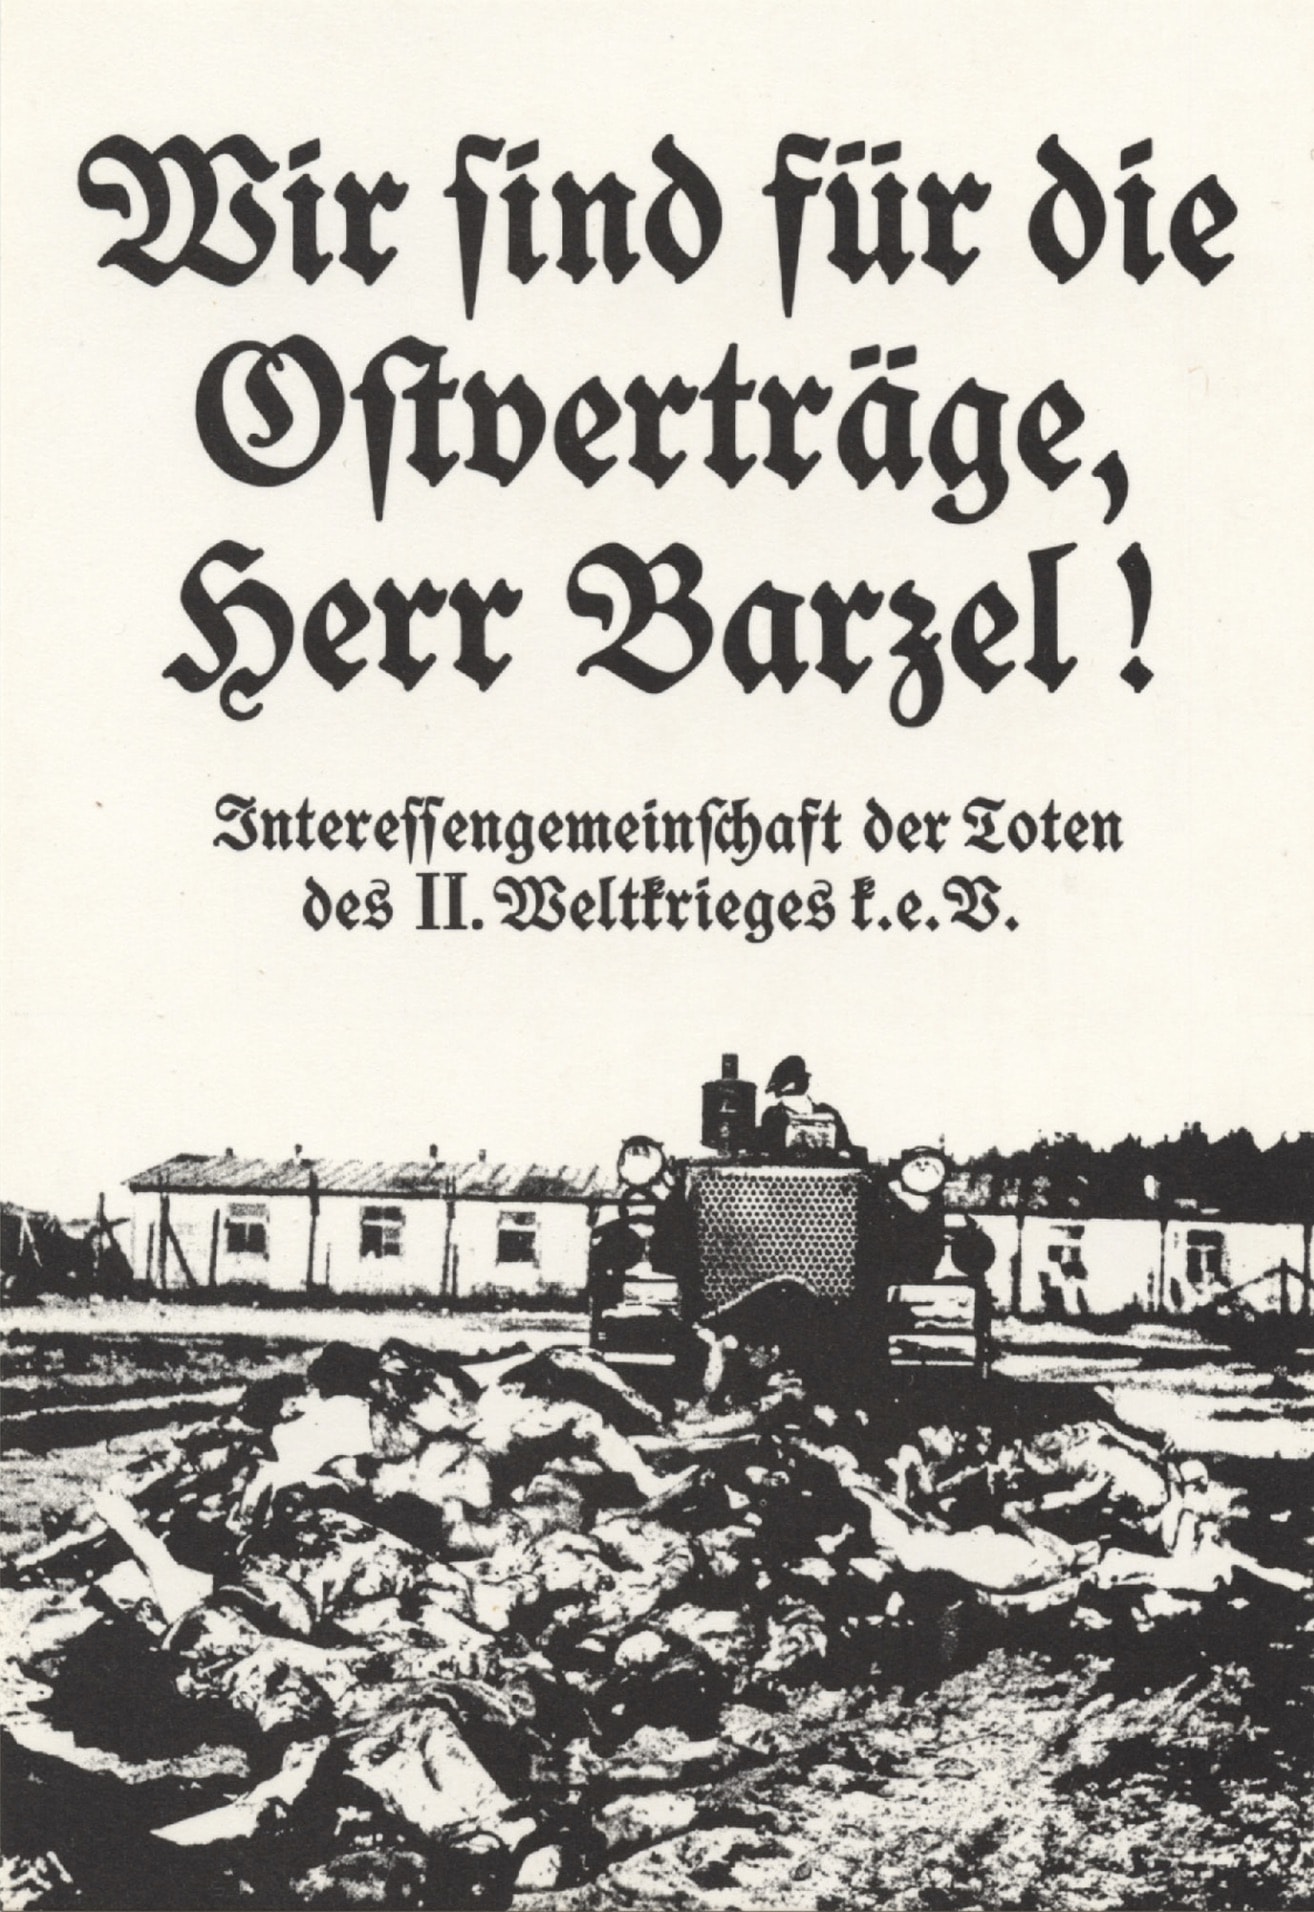 Klaus Staeck, Plakat Ostverträge 1972